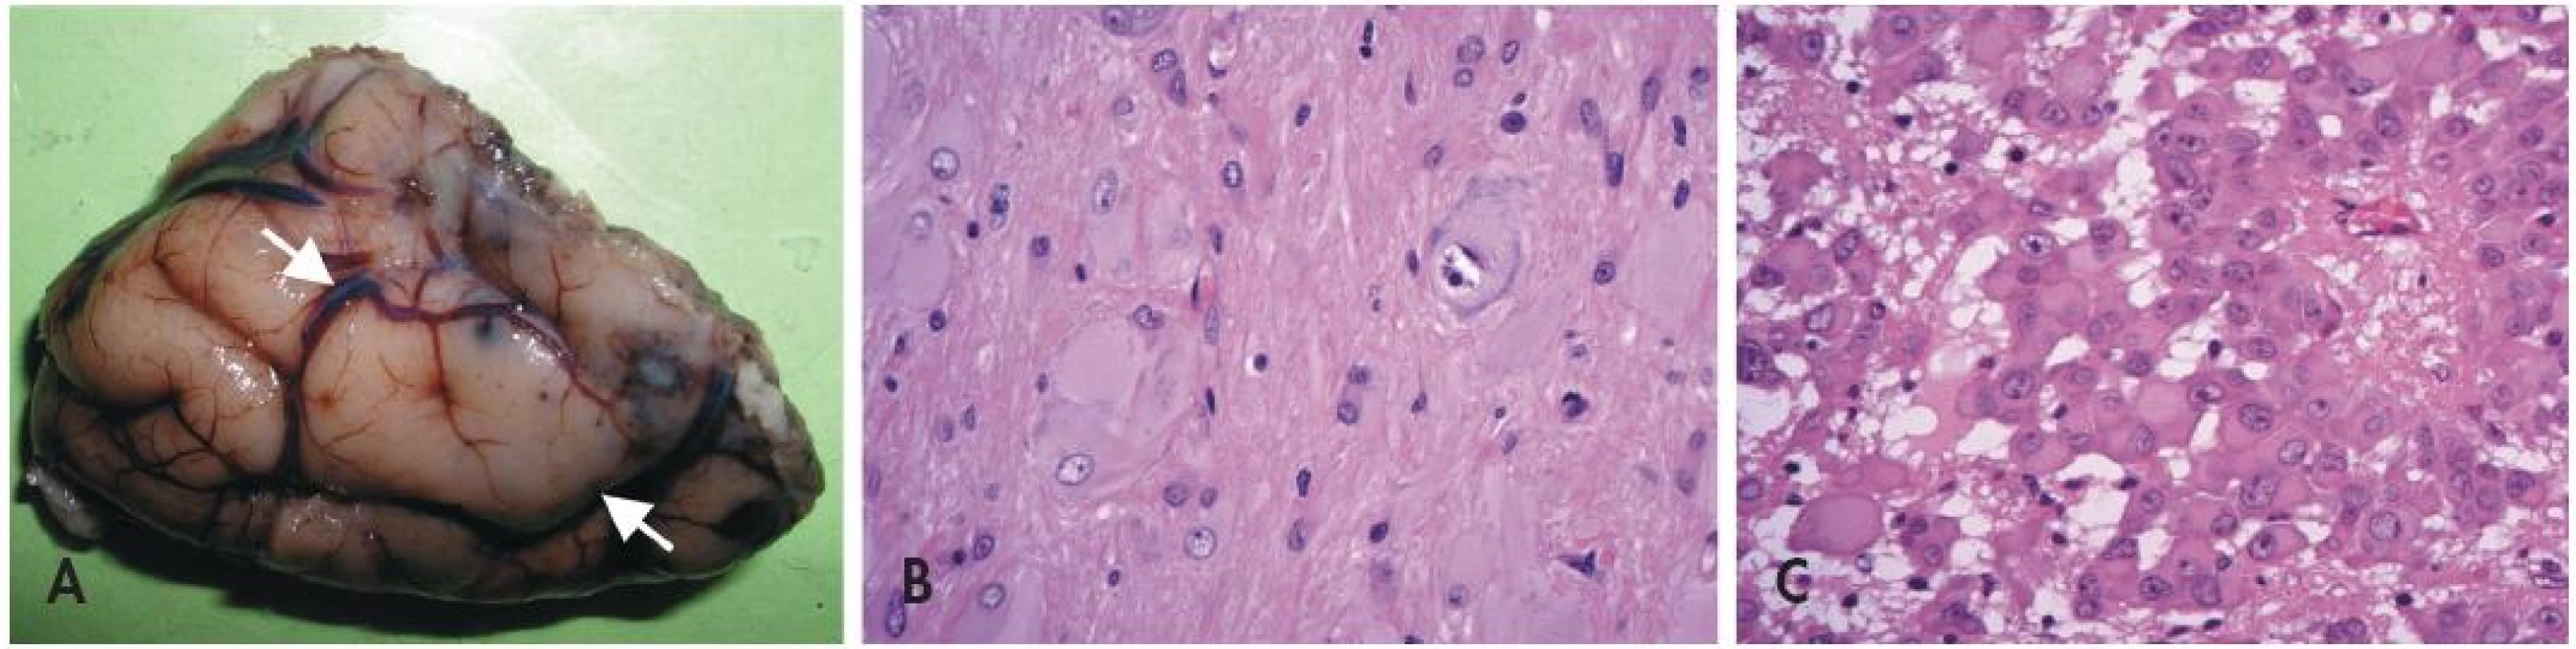 Tuberózní skleróza. Oblast korového tuberu imponuje makroskopicky jako tužší oploštělá oblast s poruchou gyrifikace (A). Pro kortikální tuber je mikroskopicky charakteristická přítomnost jednak obrovských dysmorfních neuronů, jednak bizarních buněk s obšírnou eozinofilní cytoplazmou (B). Subependymální obrovskobuněčný astrocytom (SEGA)(C) je benigní nádor rostoucí ve stěně laterálních komor mozku. Je tvořený atypickými velkými astrocyty epiteloidního vzhledu s bohatou eozinofilní cytoplazmou.